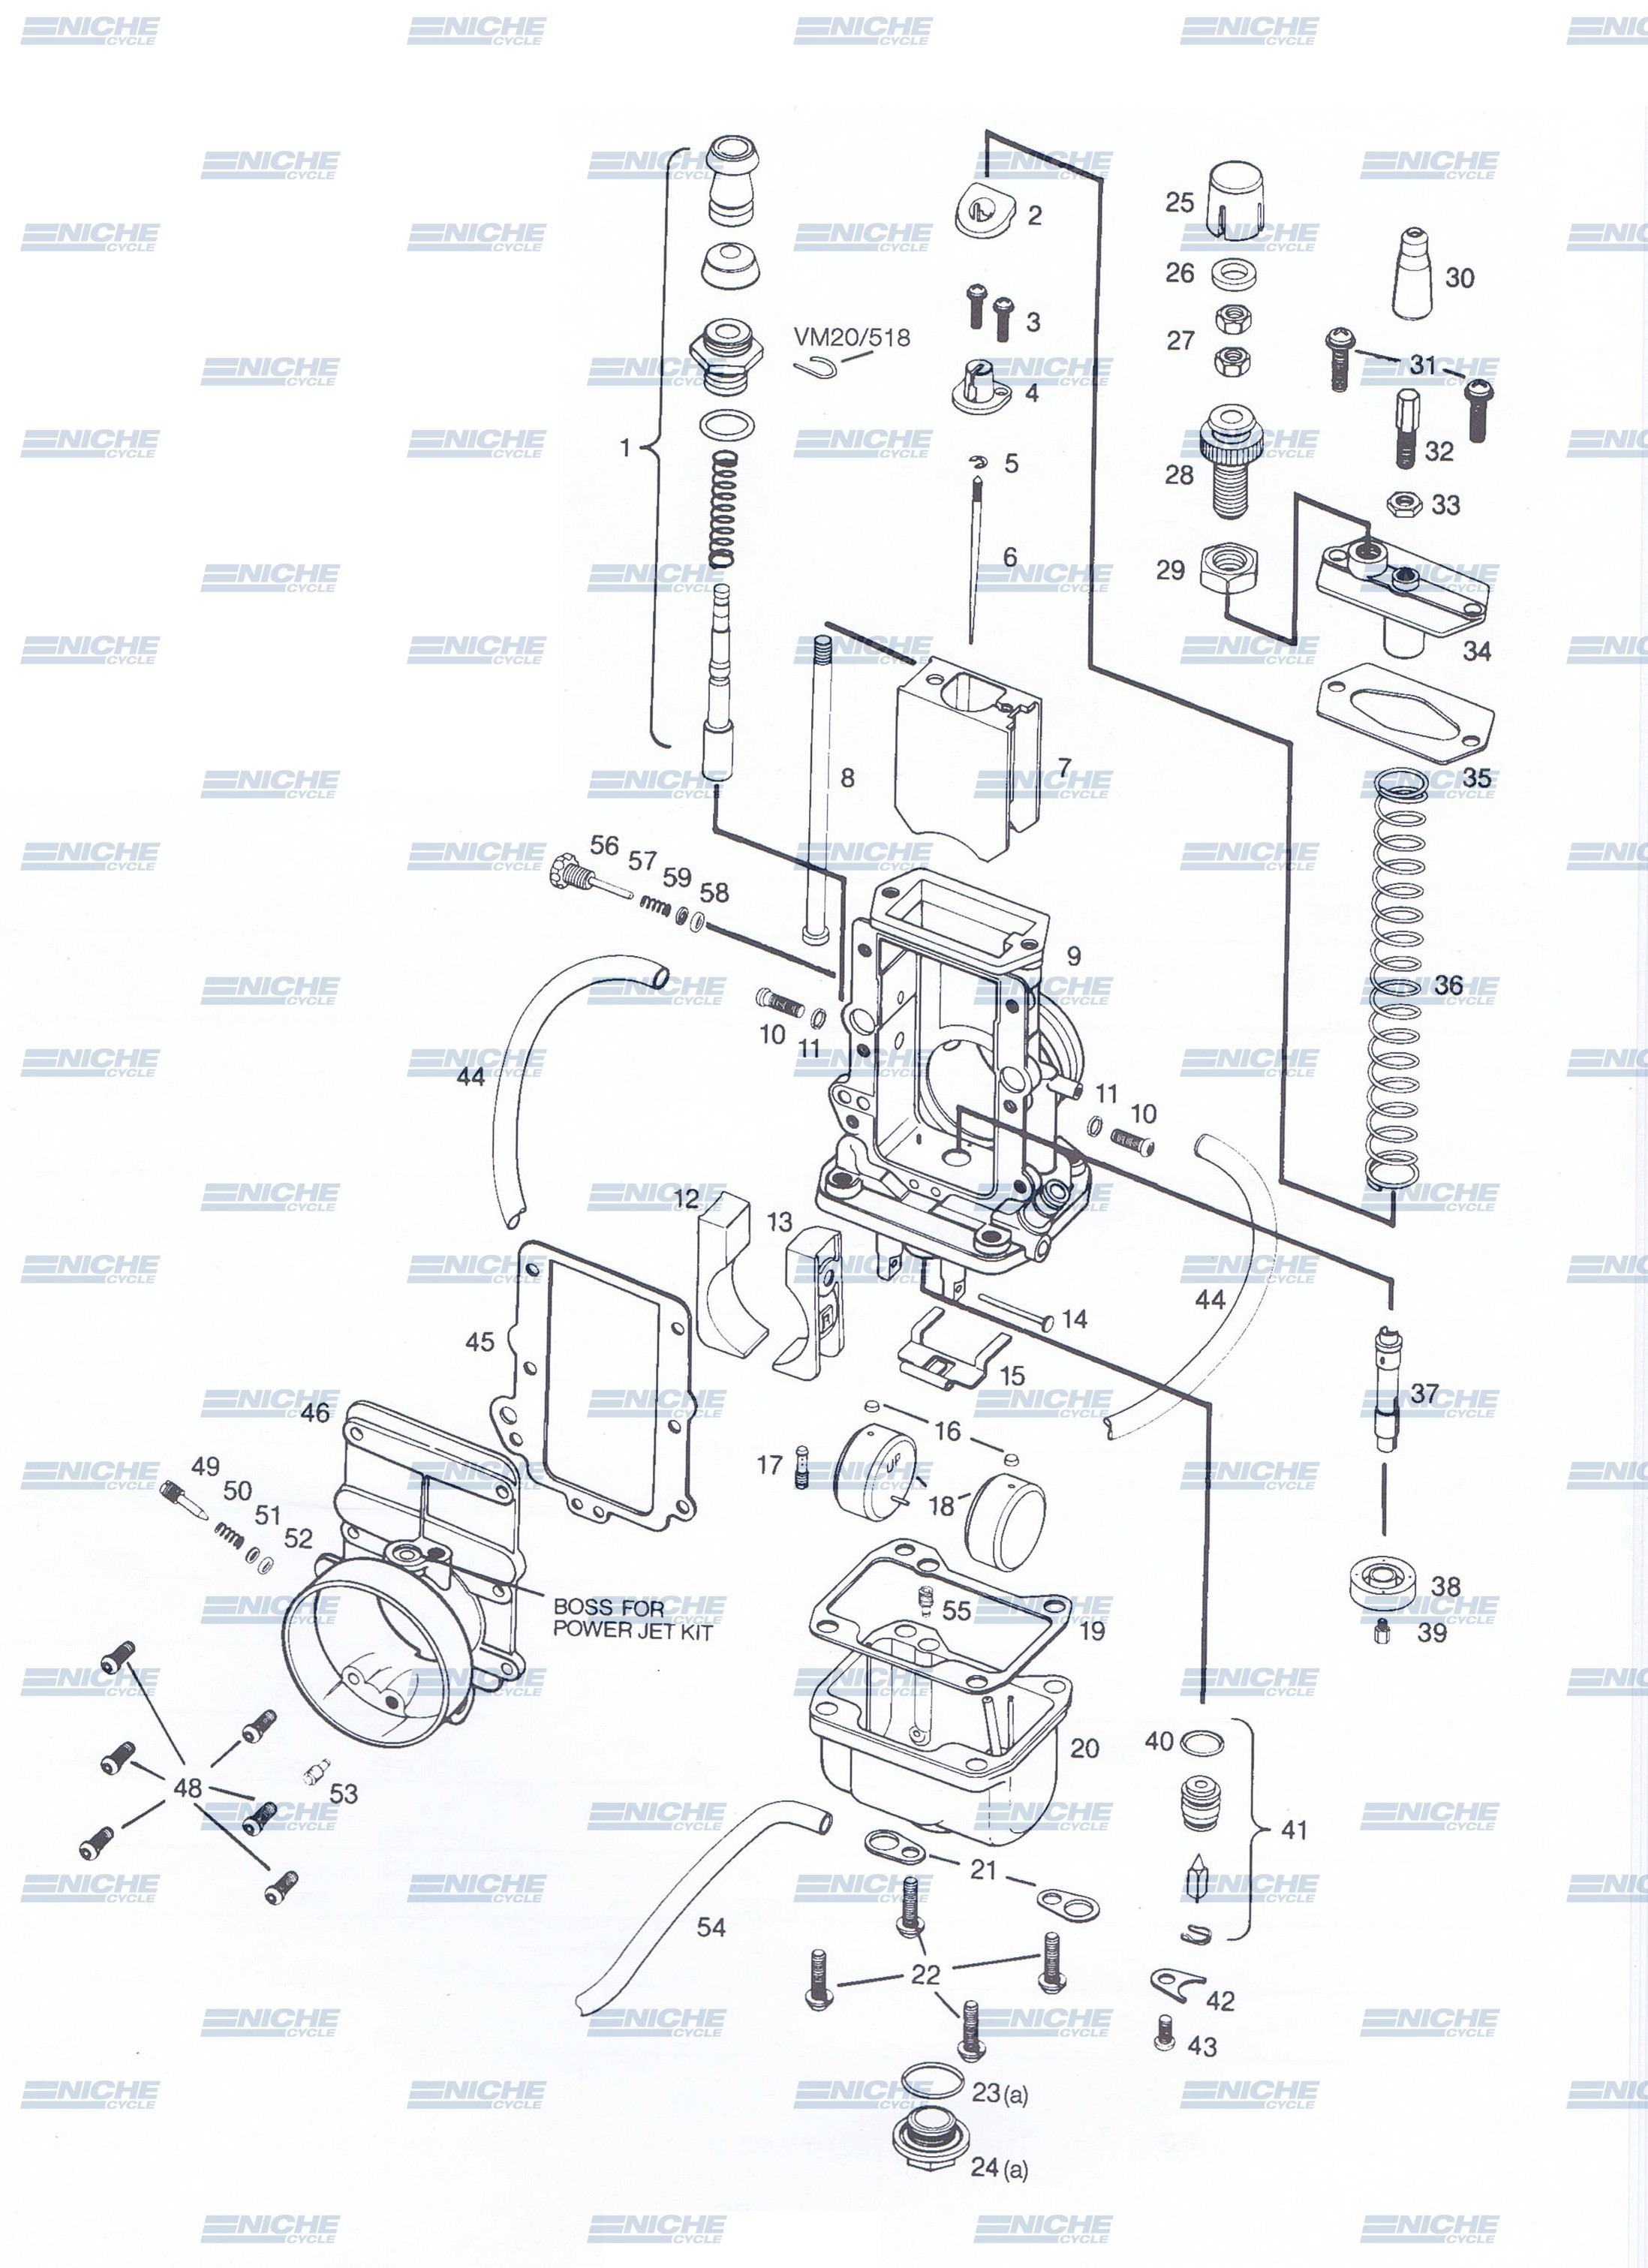 Mikuni TM38-3 Exploded View - Replacement Parts Listing TM38-3_parts_list